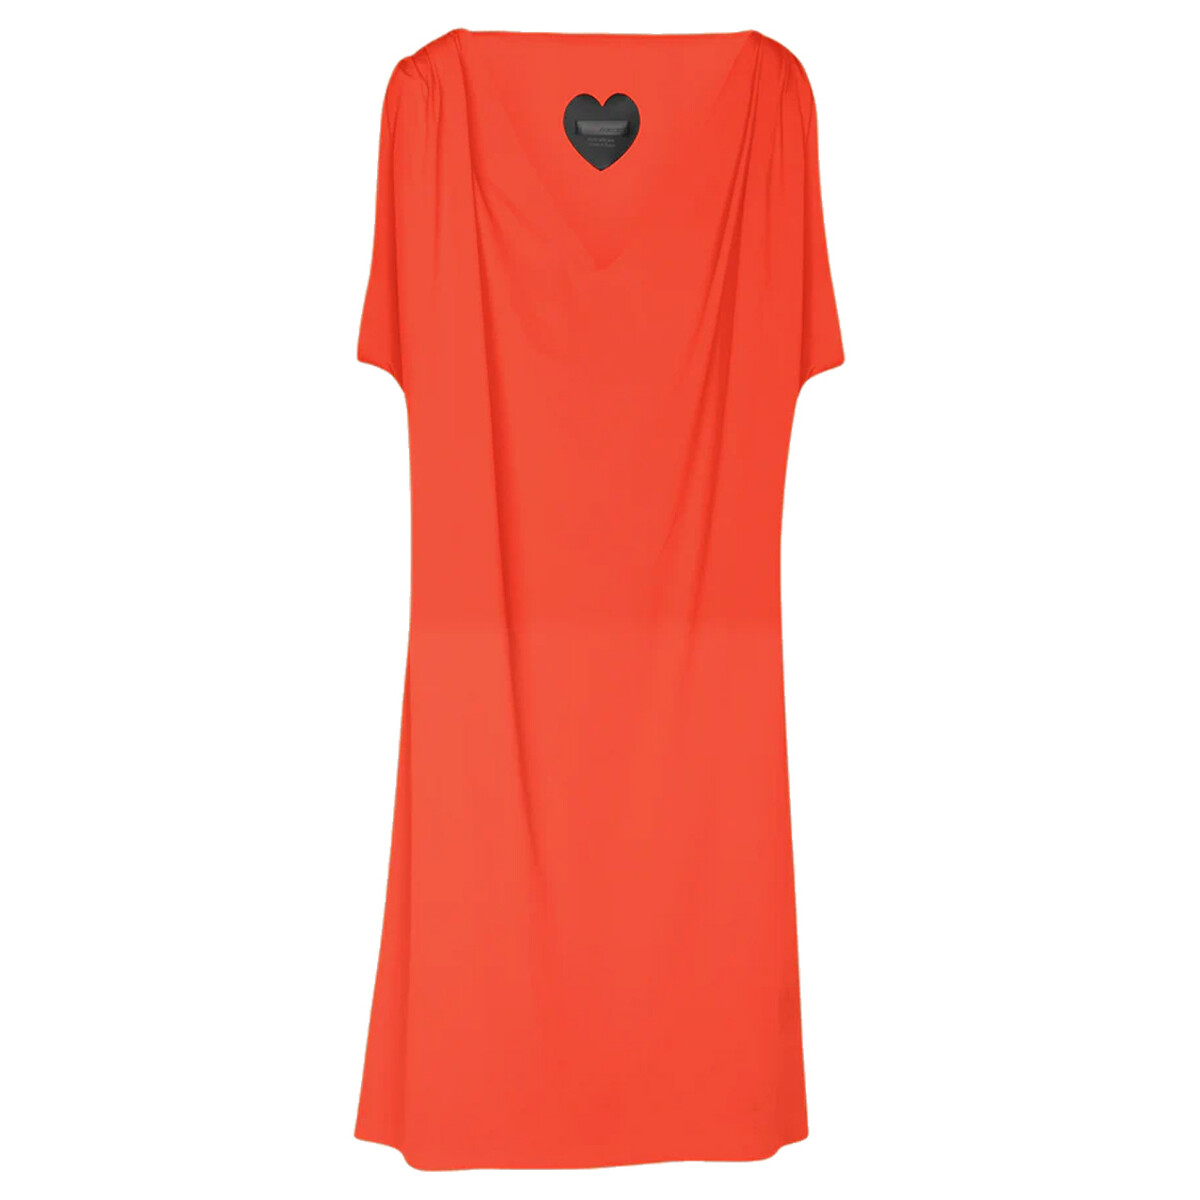 Vêtements Femme Robes courtes Rrd - Roberto Ricci Designs 23651-30 Orange